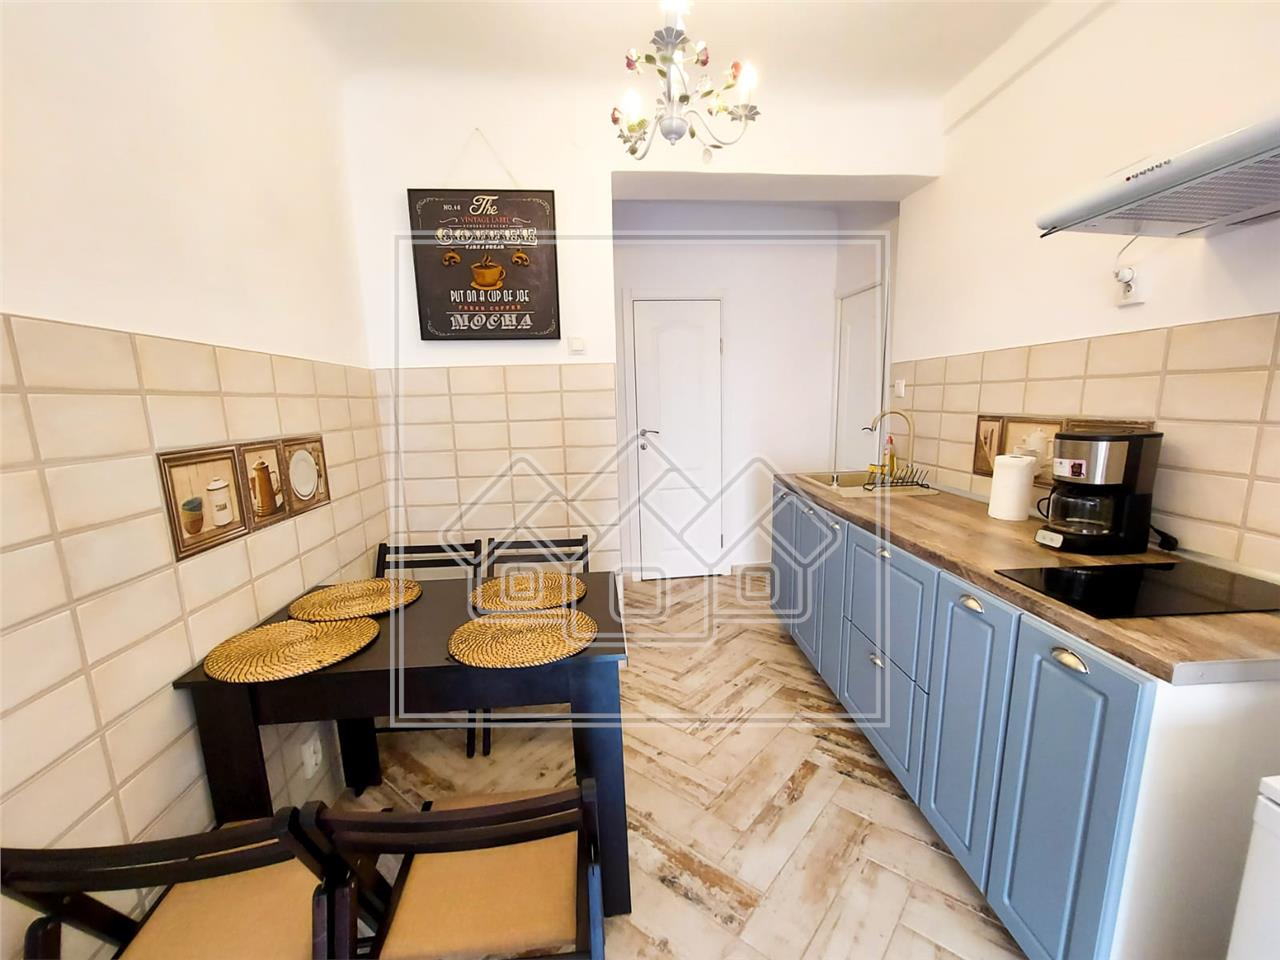 Apartament de vanzare in Sibiu - 3 camere, afacere in regim hotelier